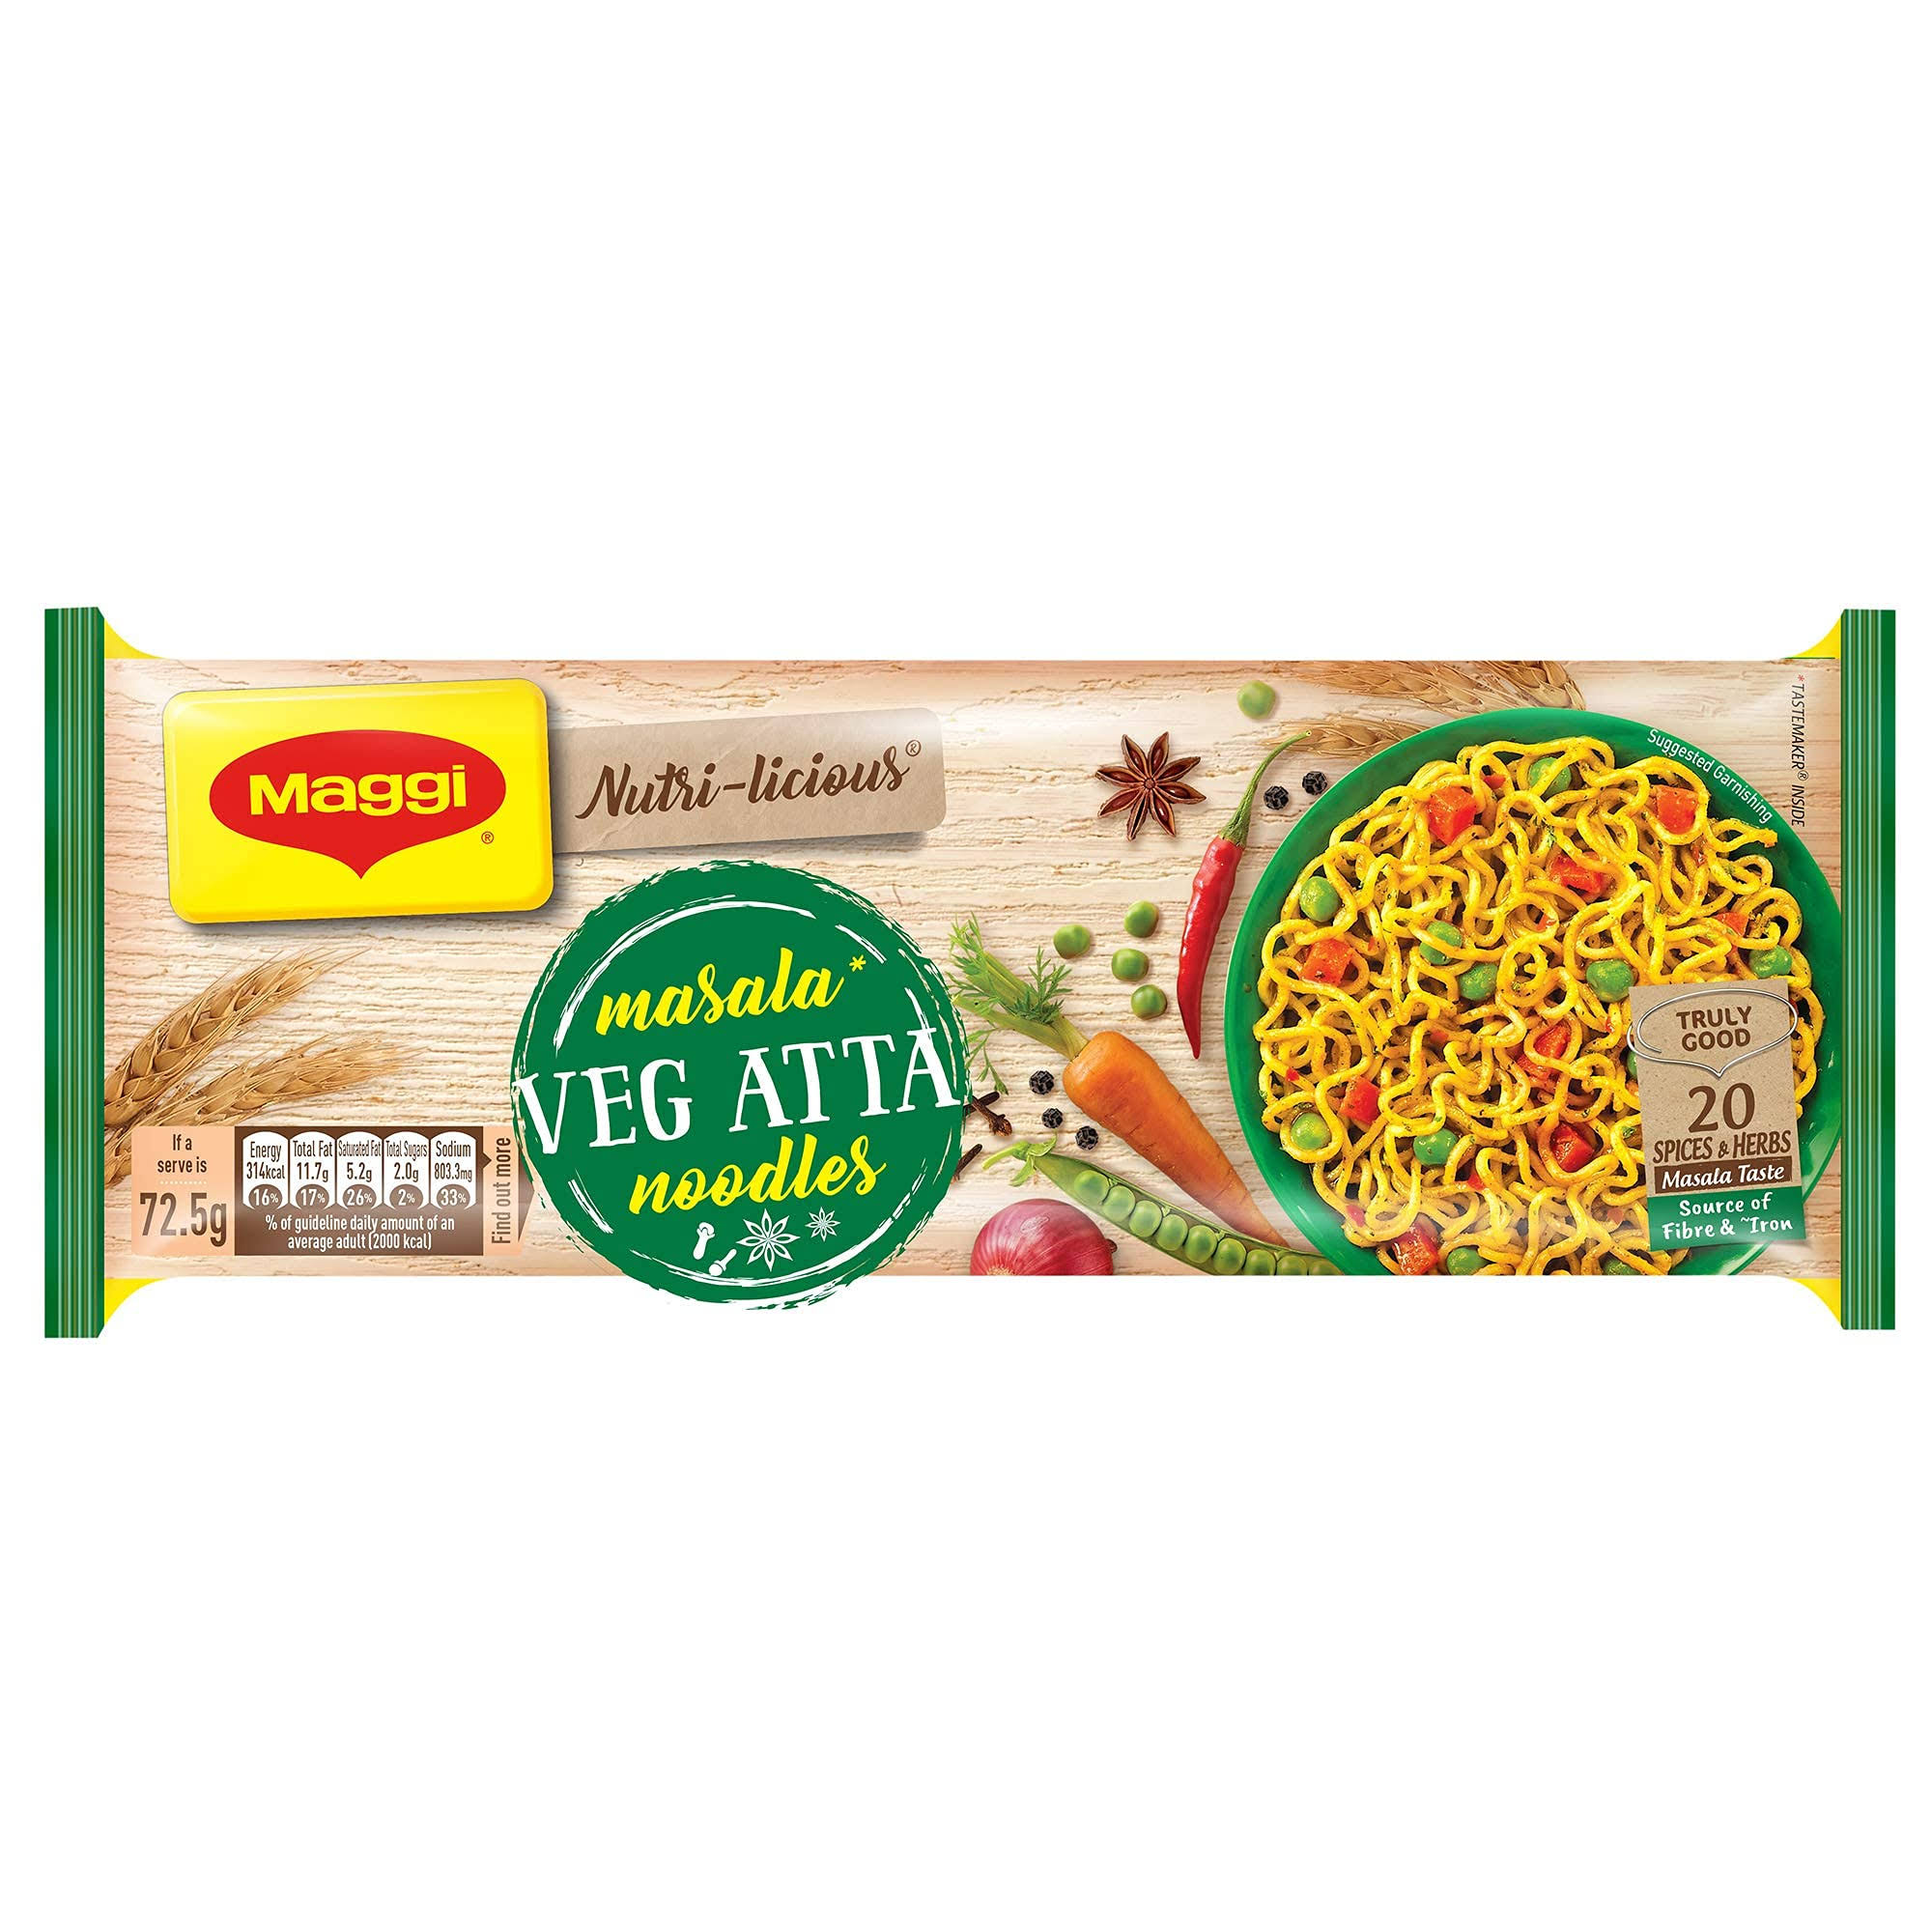 Maggi Veg Atta Noodles - 320g